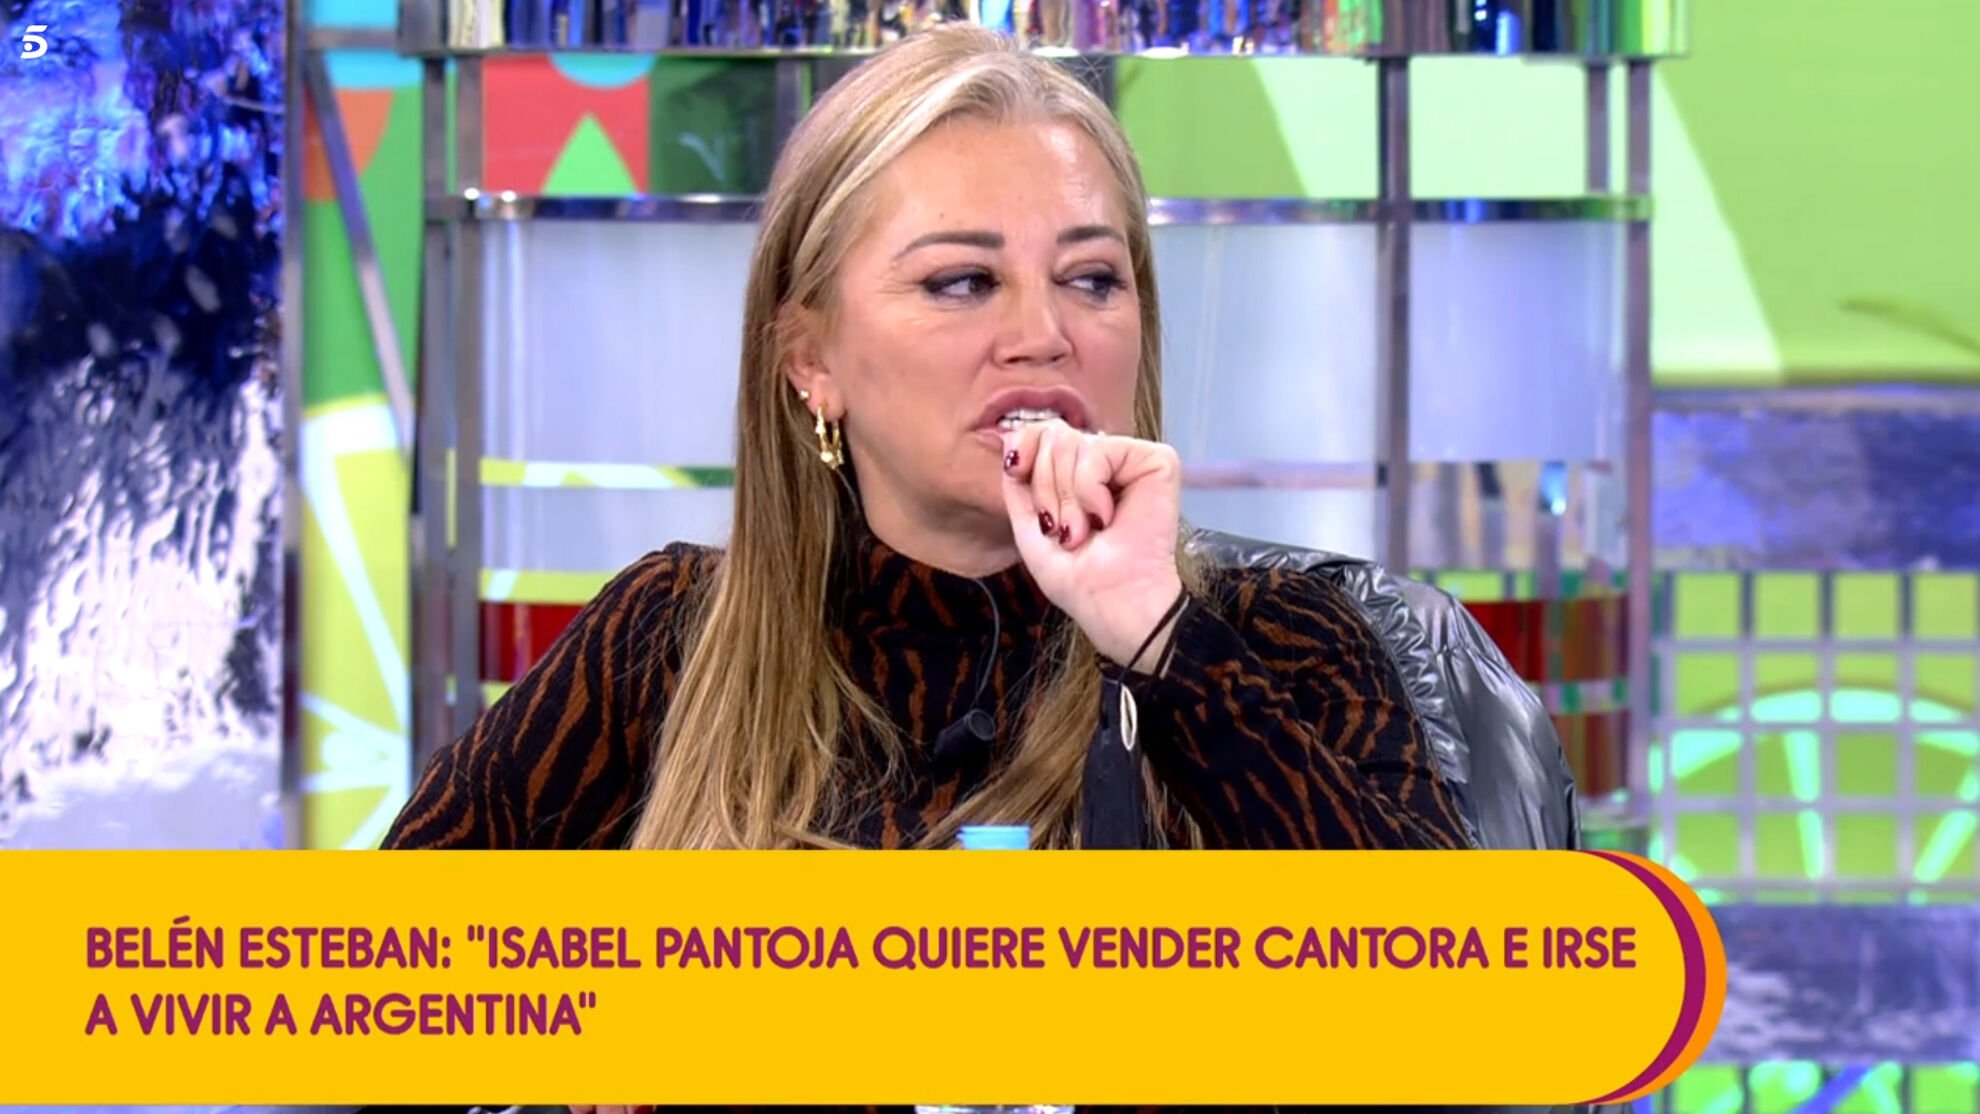 De ser más famosa que Belén Esteban, a prohibir que salga una imagen suya, ni la voz, en Telecinco